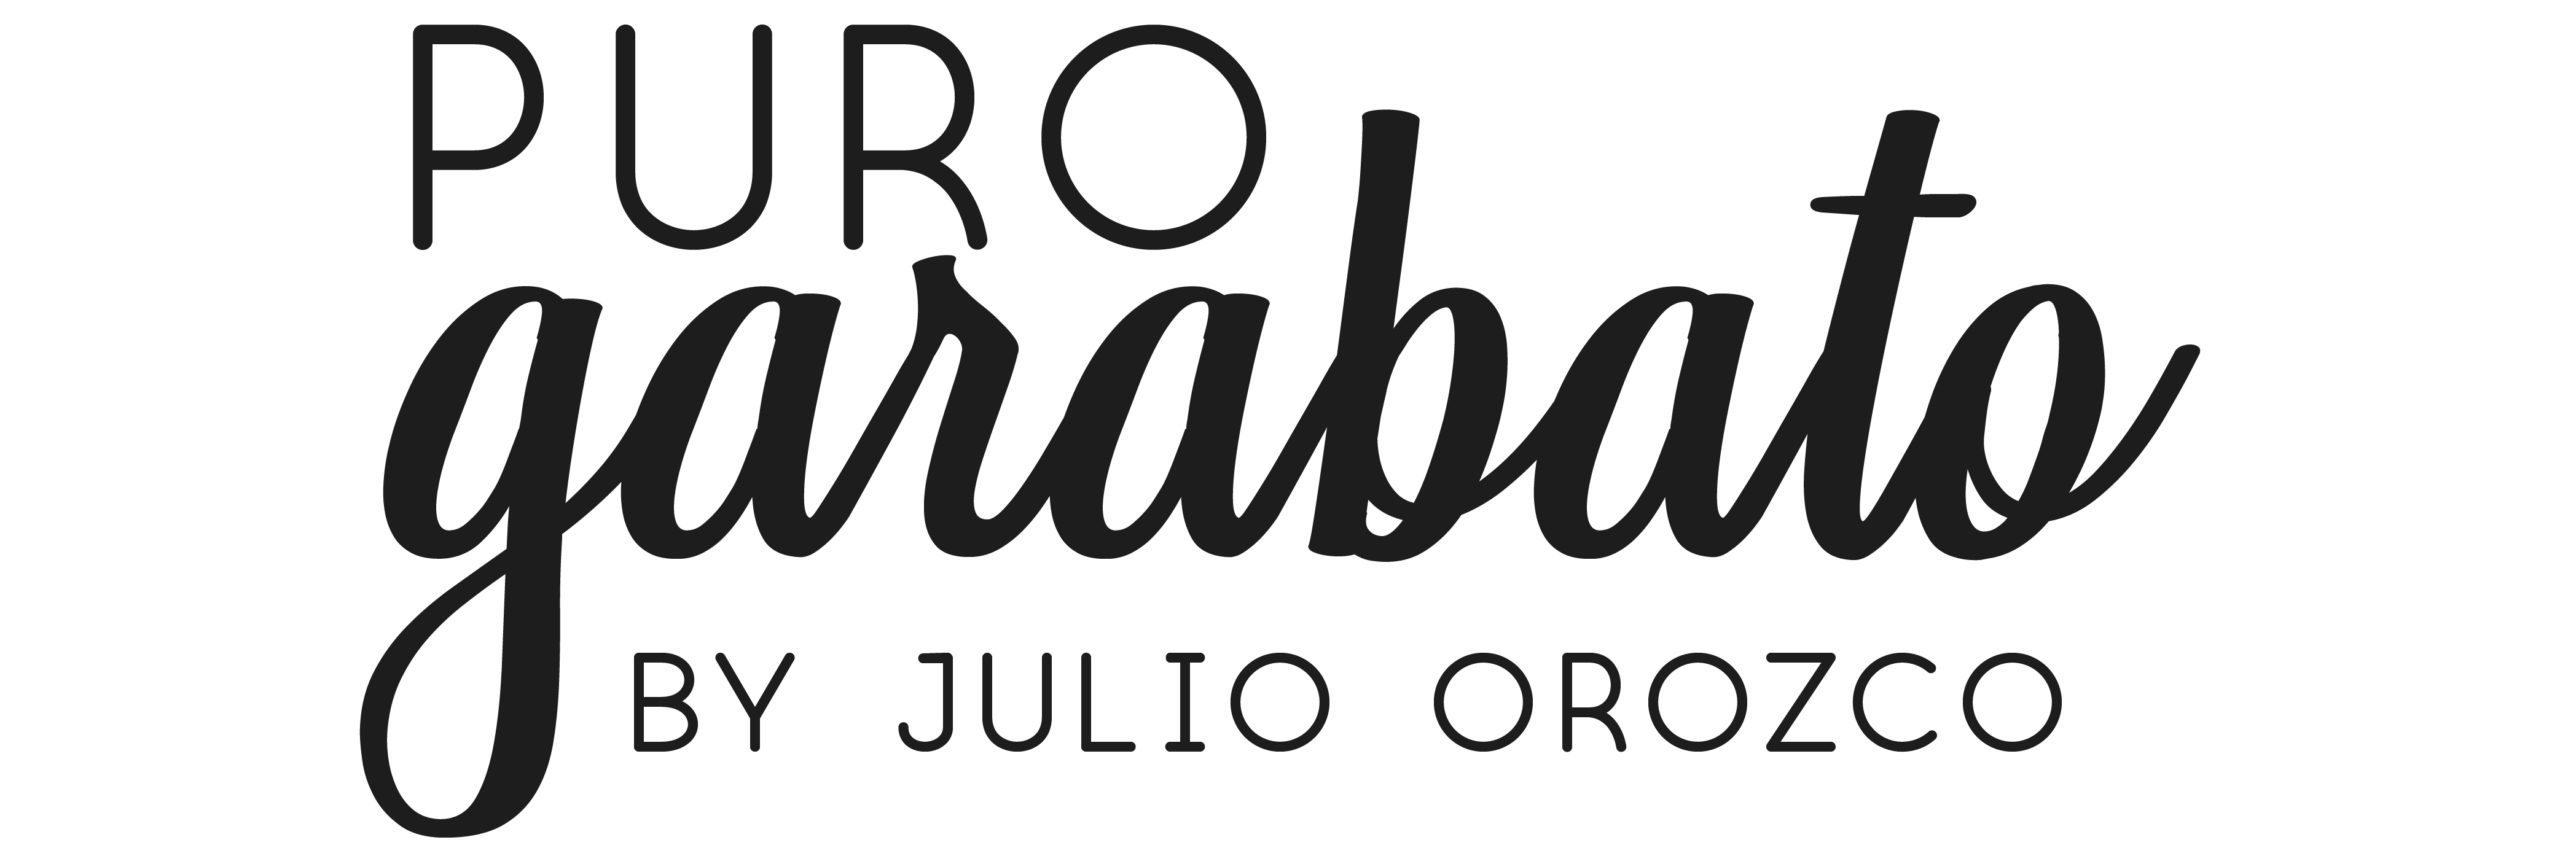 Puro Garabato - Julio Orozco